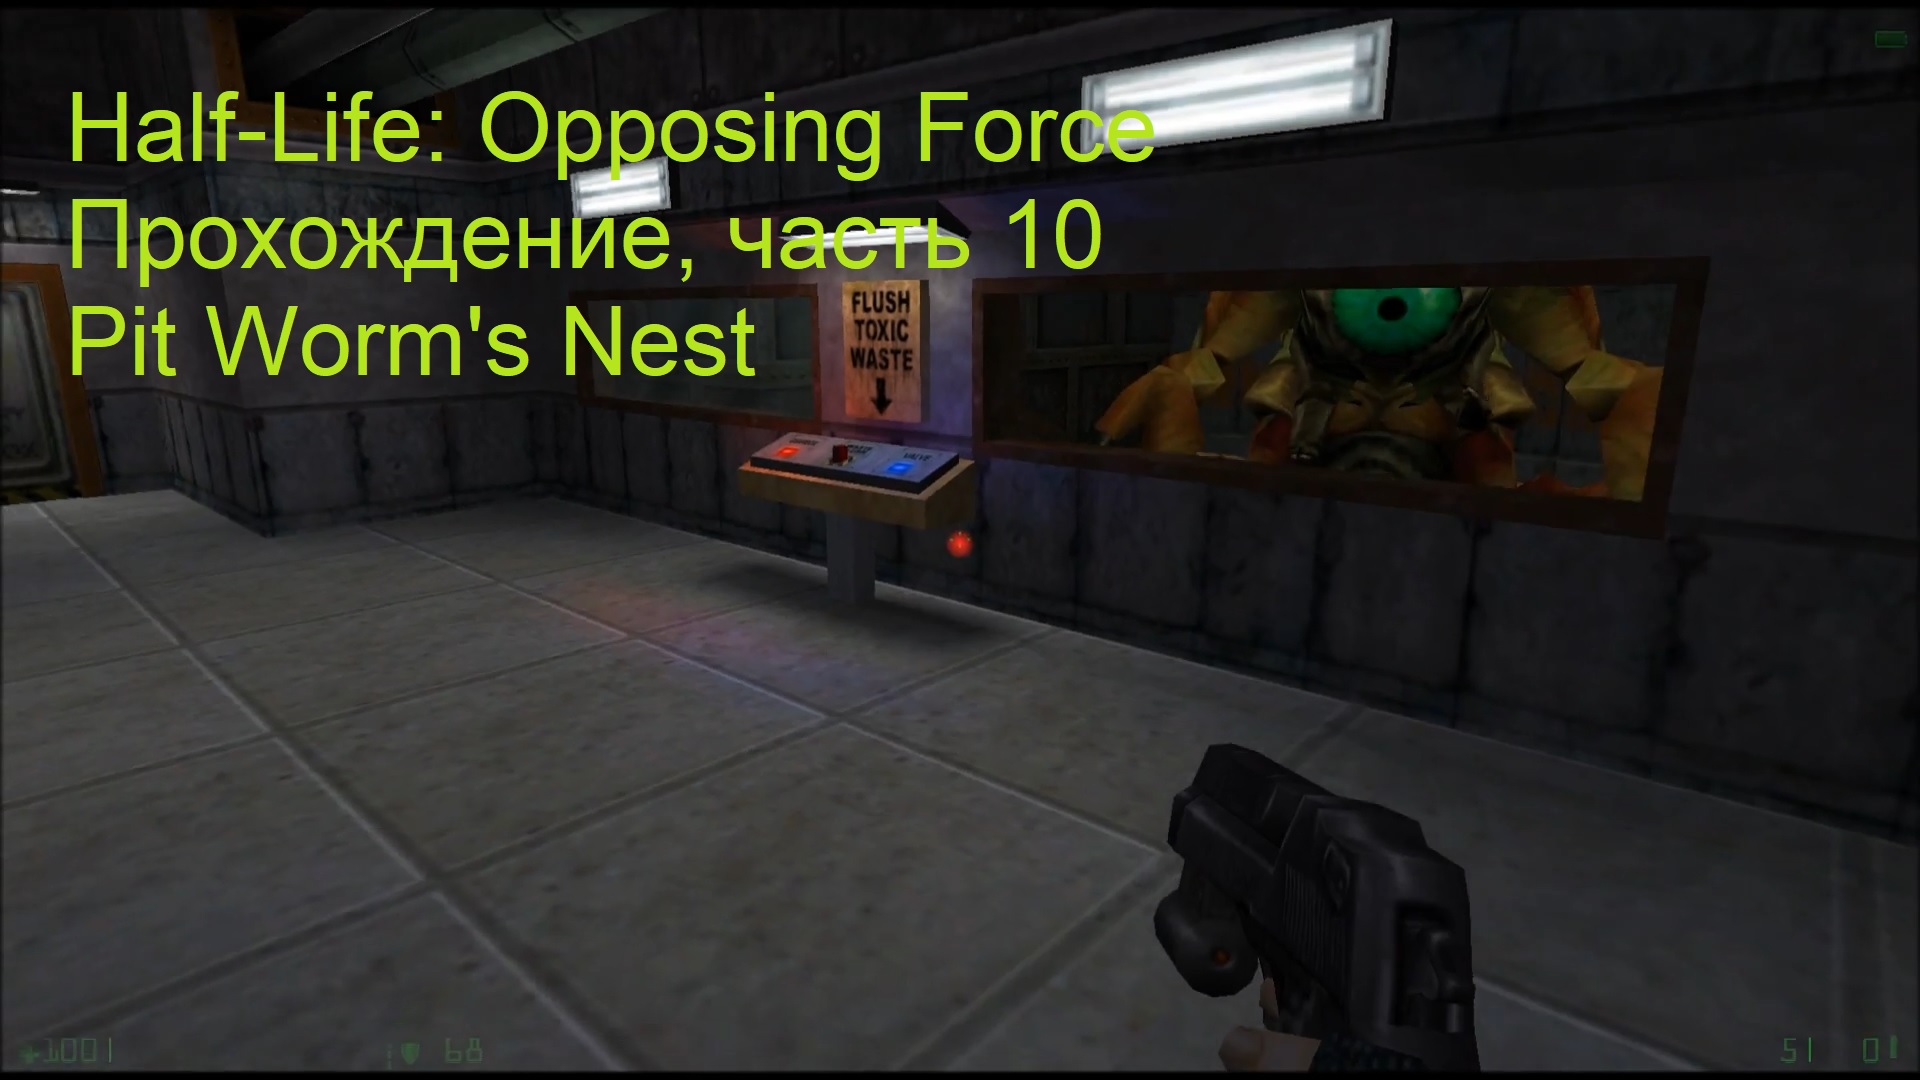 Half-Life: Opposing Force, Прохождение, часть 10 - Pit Worm's Nest